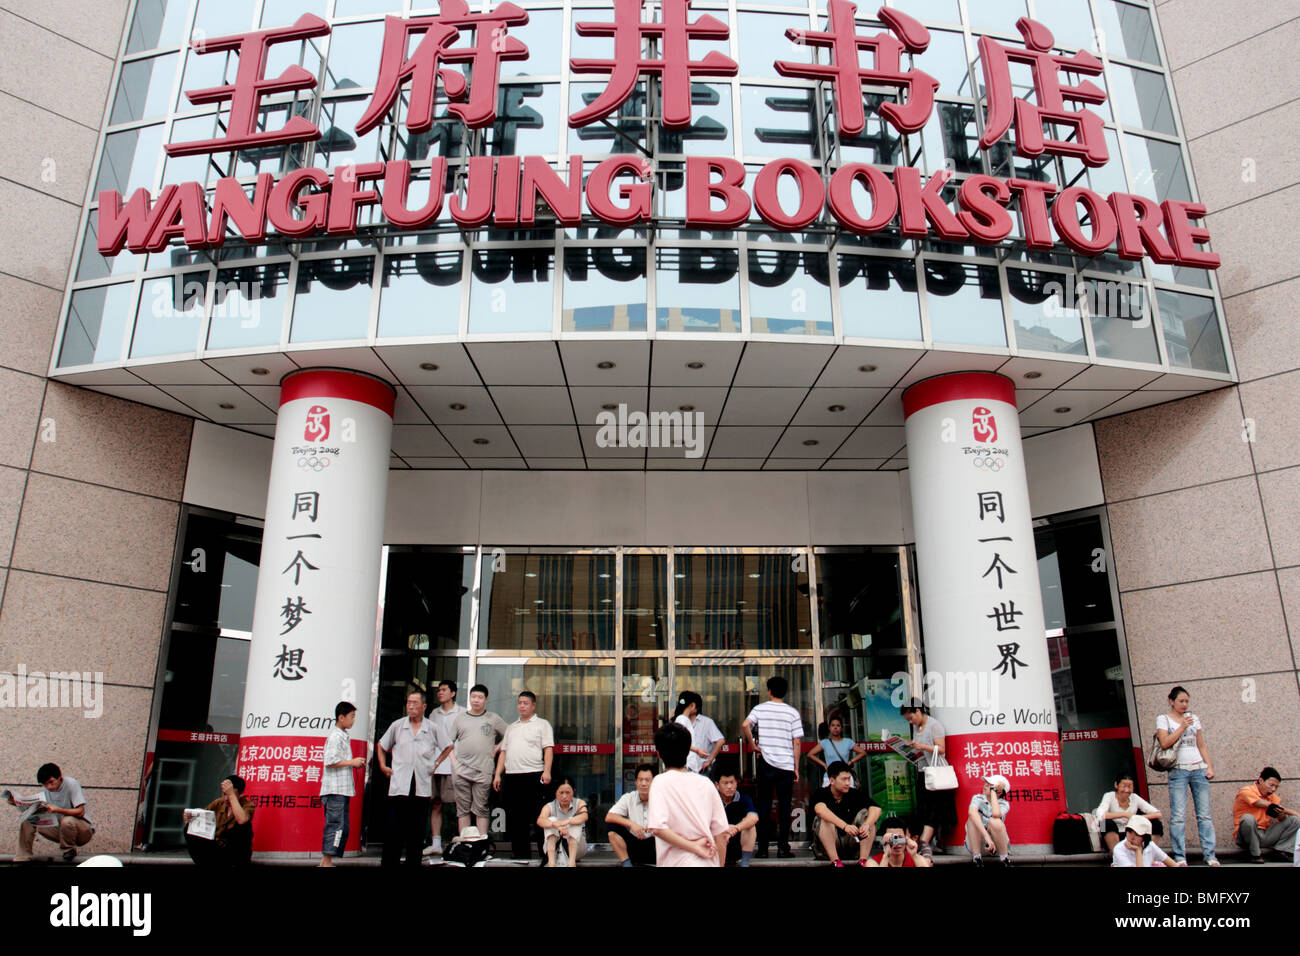 Wangfujing Bookstore, Wangfujing, Beijing, China Stock Photo